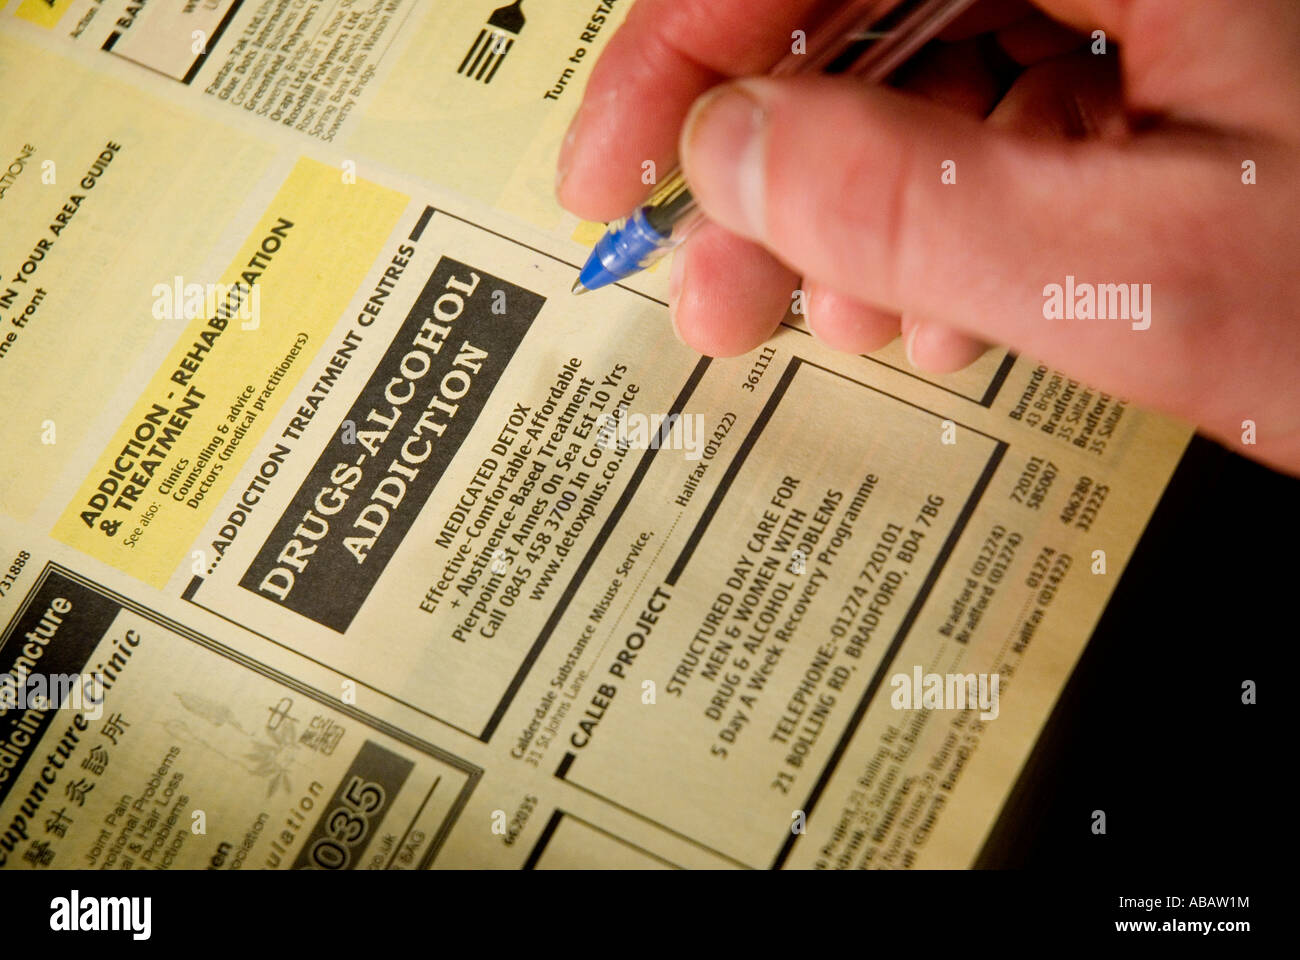 Close up of a mans main avec un annuaire téléphonique des pages jaunes le livre est ouvert à la page énumérant les demandes d'indemnisation entreprises Banque D'Images